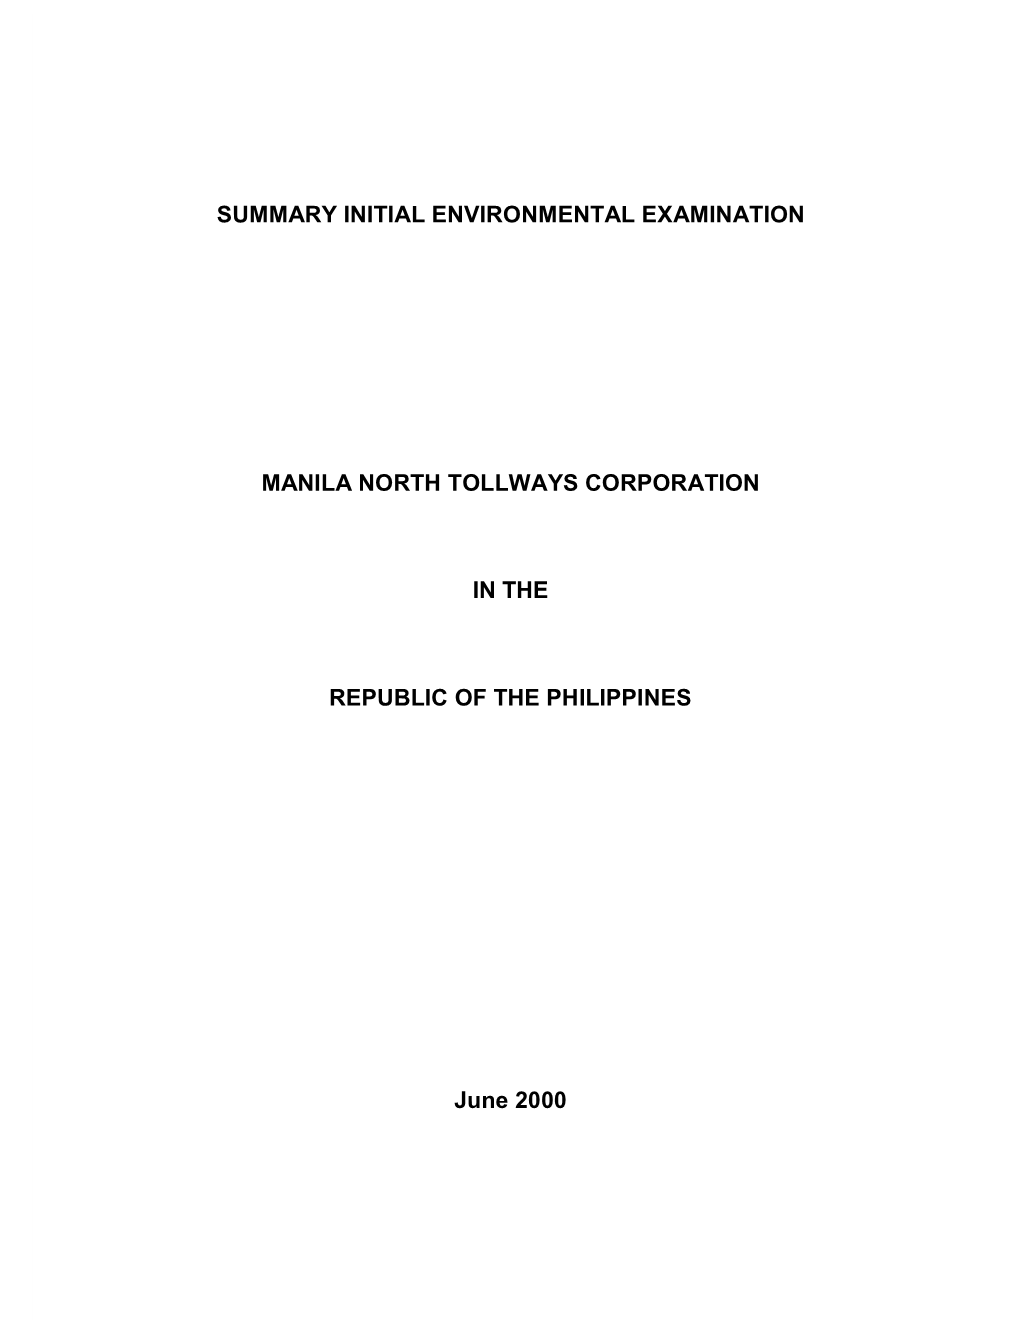 Summary Initial Environmental Examination